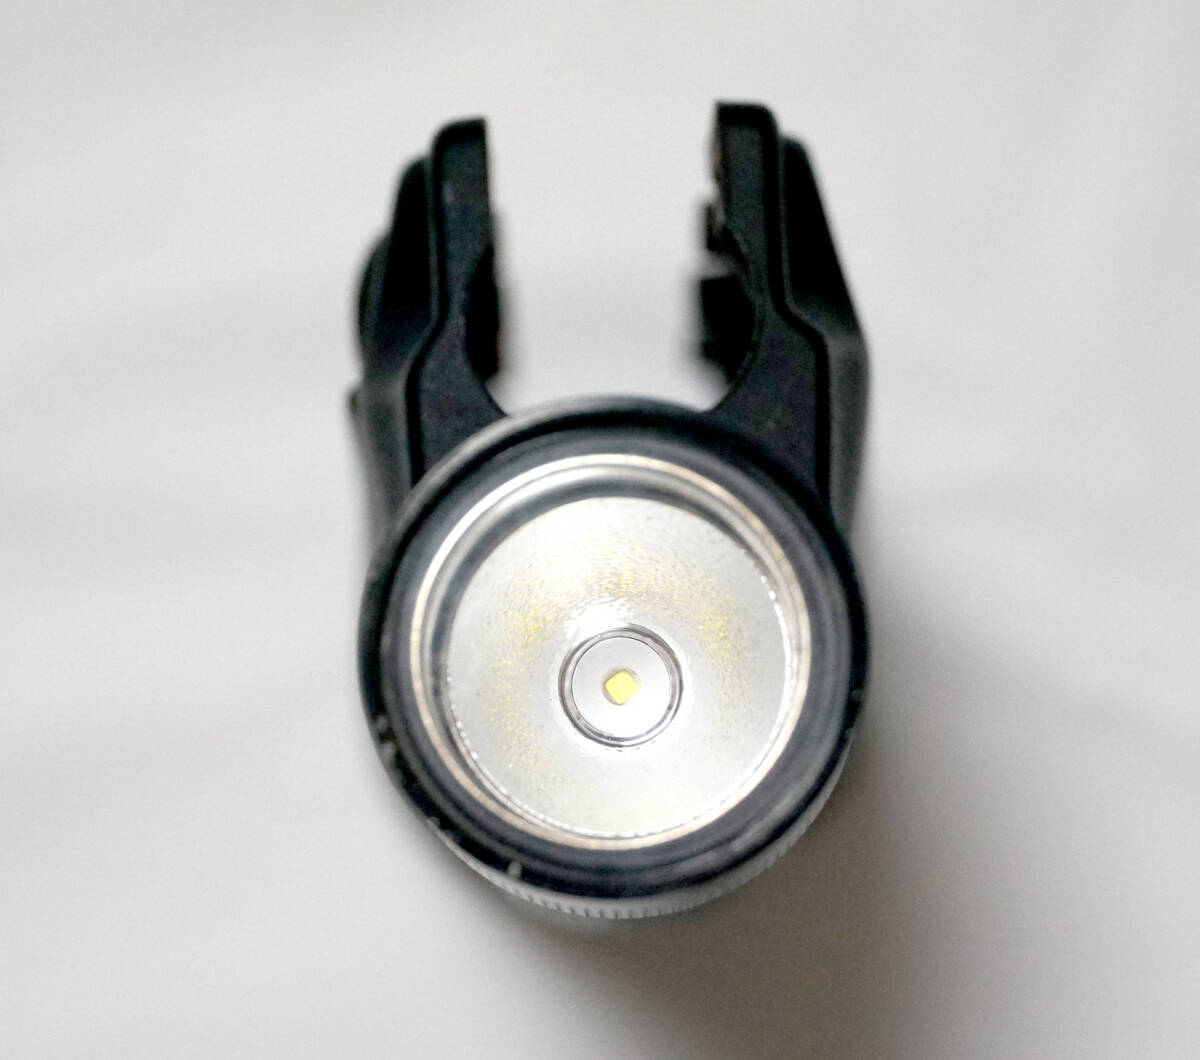 メーカー不明 SureFire風 MP5 ハンドガード LEDライト 東京マルイ スタンダード電動ガン対応 点灯確認済 CQB CQC シュアファイア A4 A5の画像4